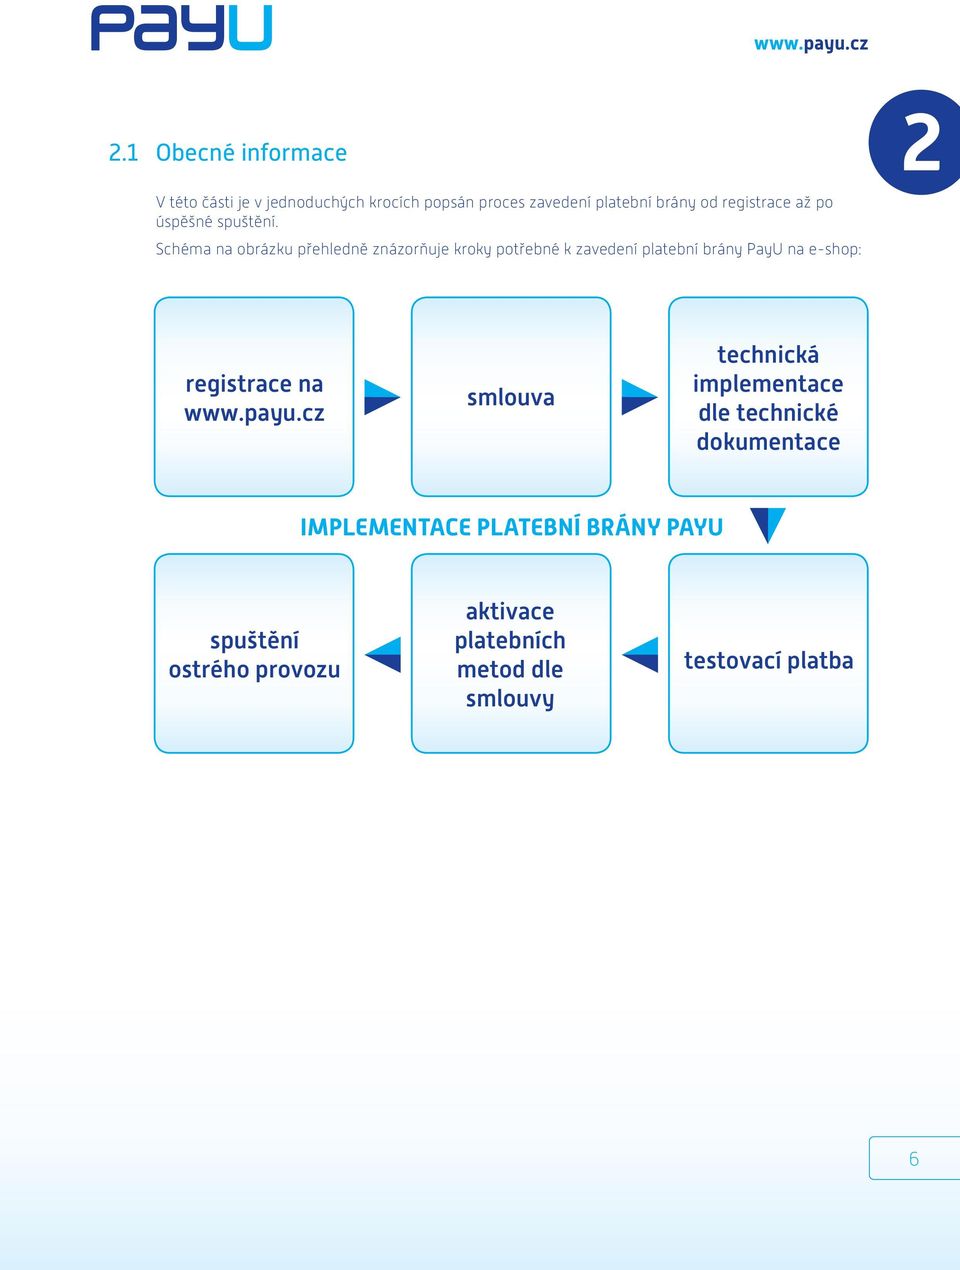 Schéma na obrázku přehledně znázorňuje kroky potřebné k zavedení platební brány PayU na e-shop: registrace